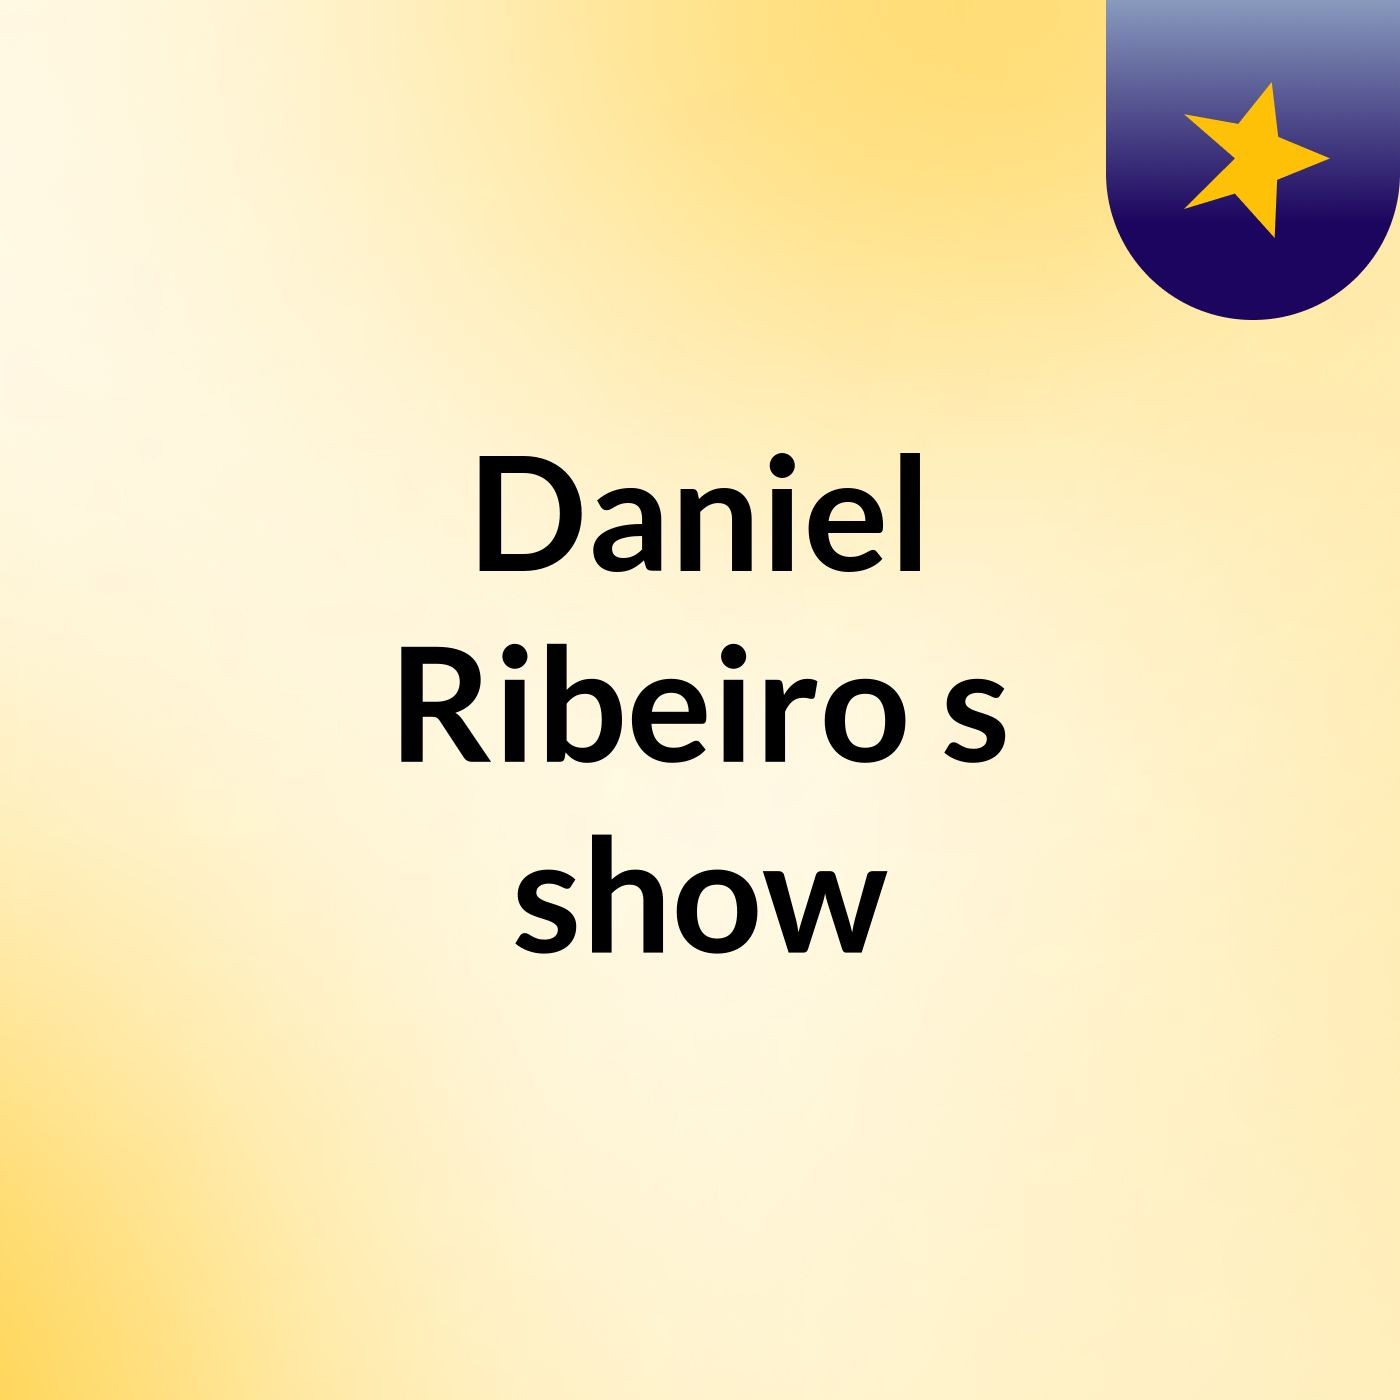 Daniel Ribeiro's show